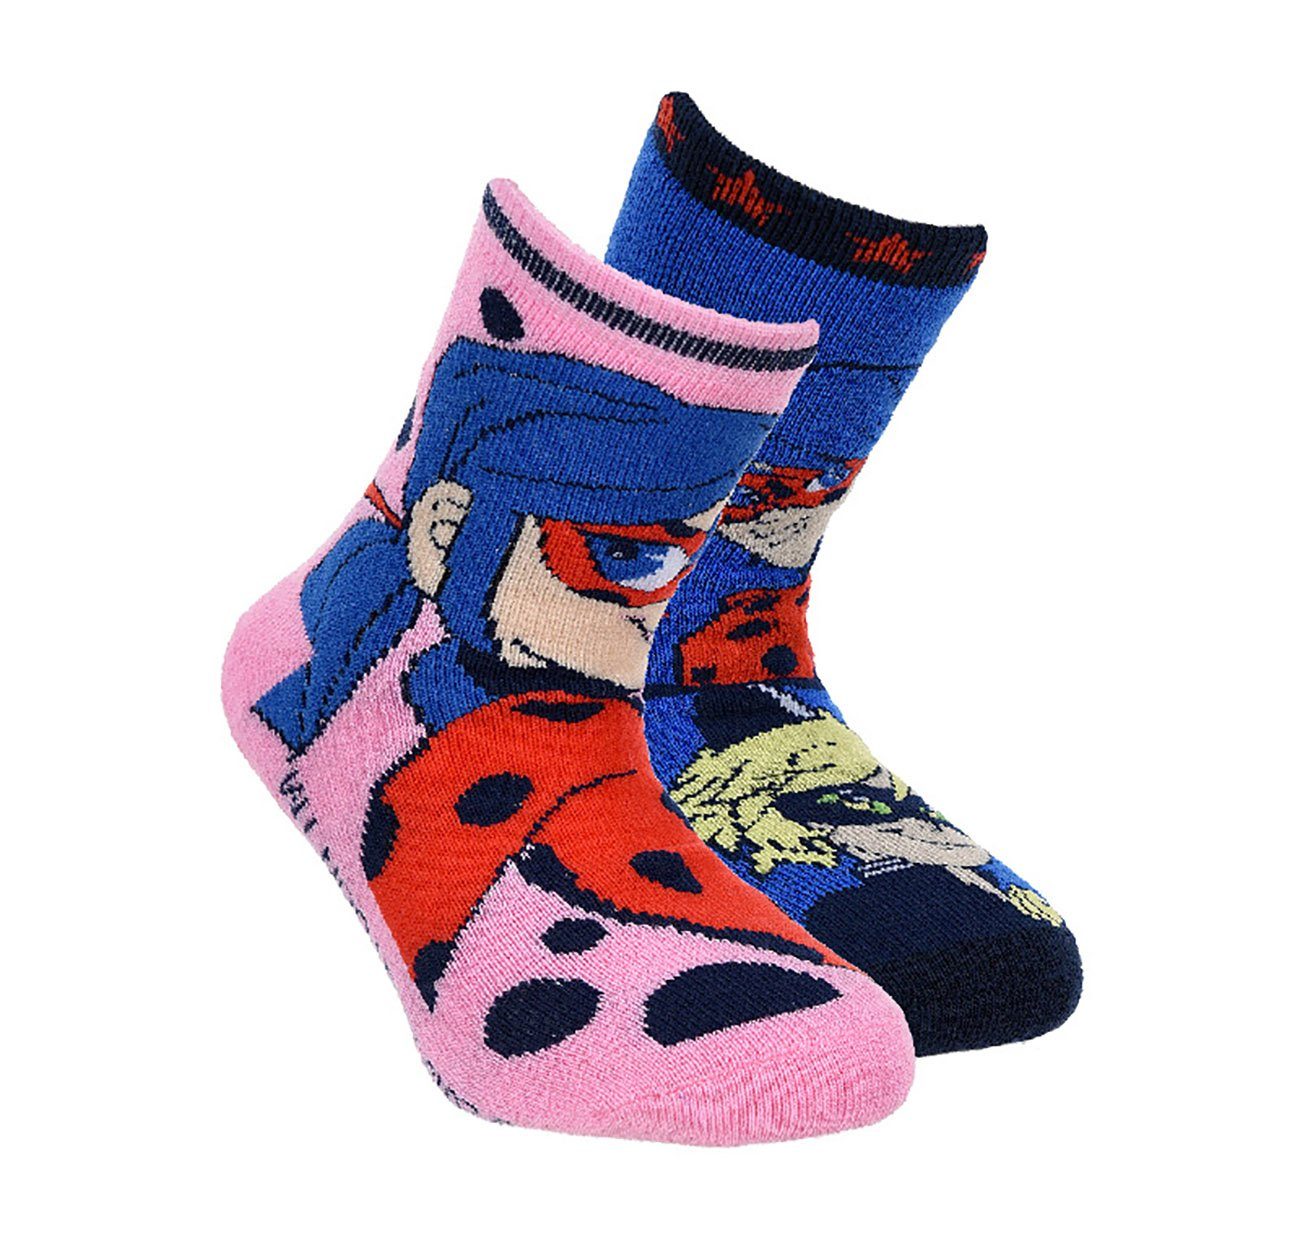 Neue Ware eingetroffen! Sun City Socken Miraculous Ladybug Größe:27-30 blau-pink, 2er-Pack, Kinder Antirutsch-Socken